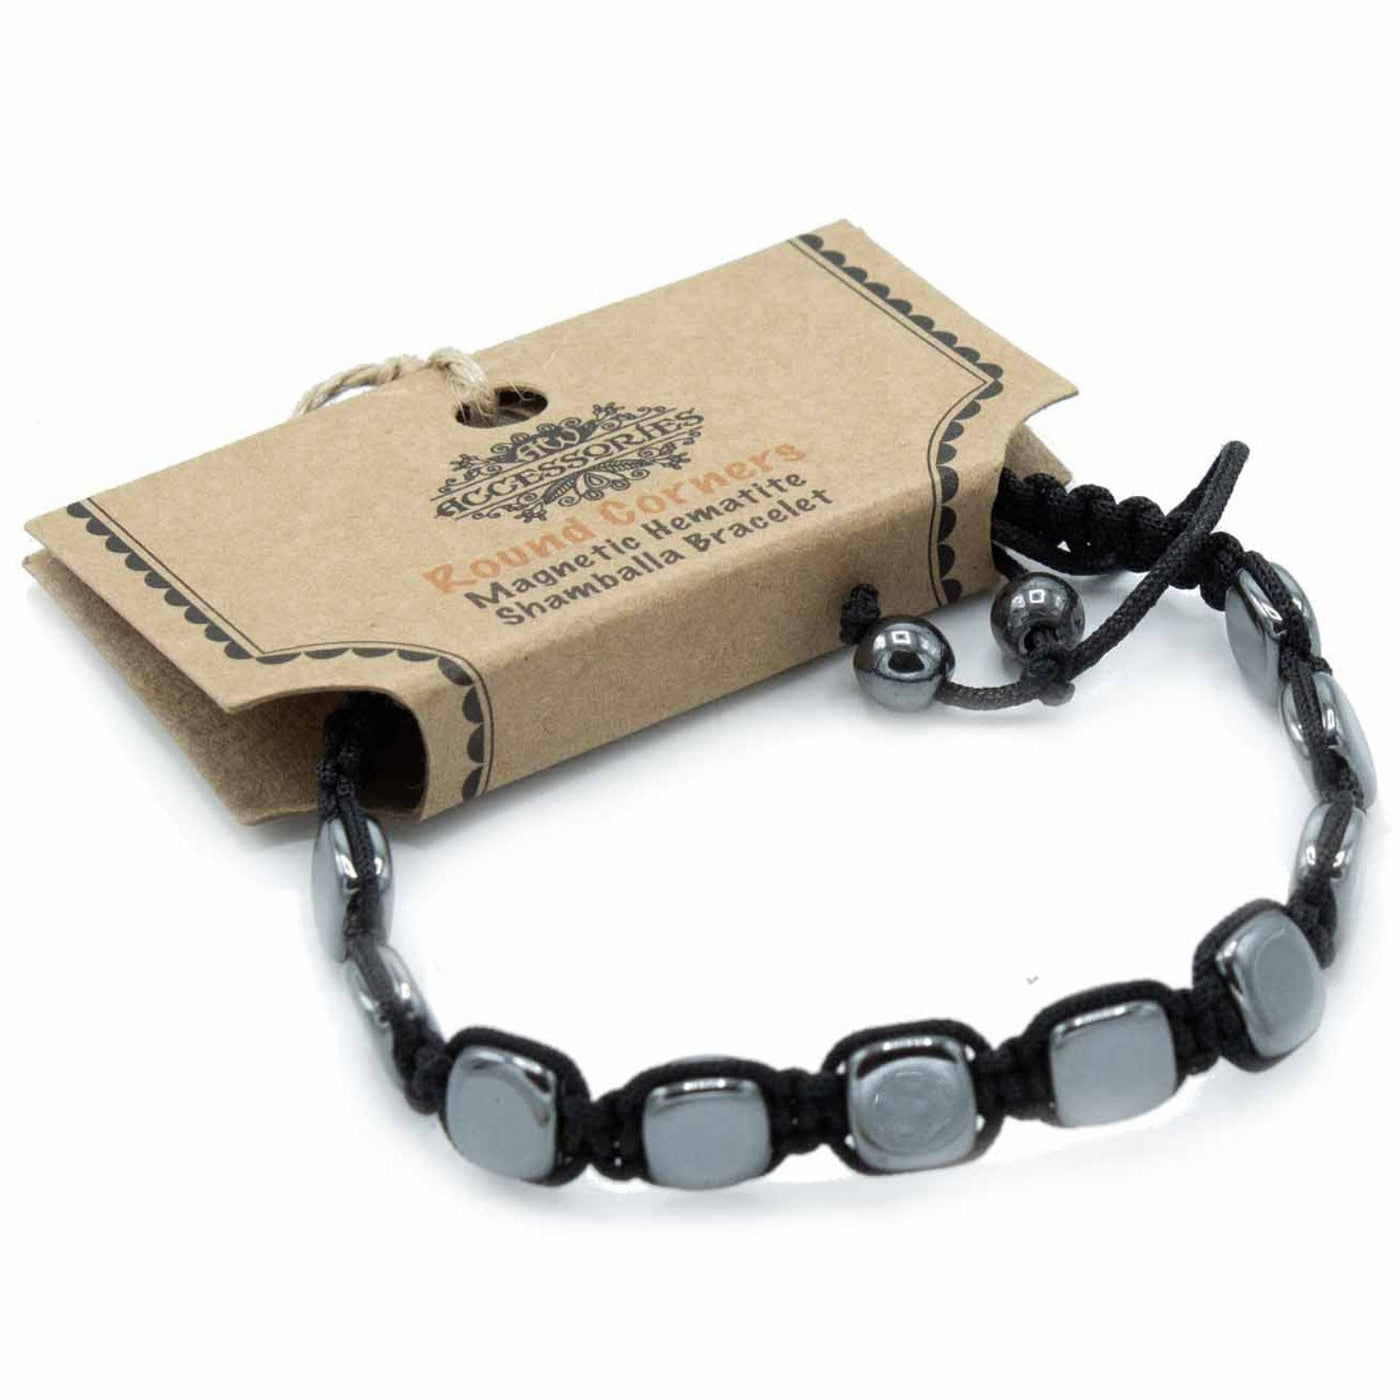 Unisex Hematite Rounded Squares Beads Bracelet With Macrame Knot.